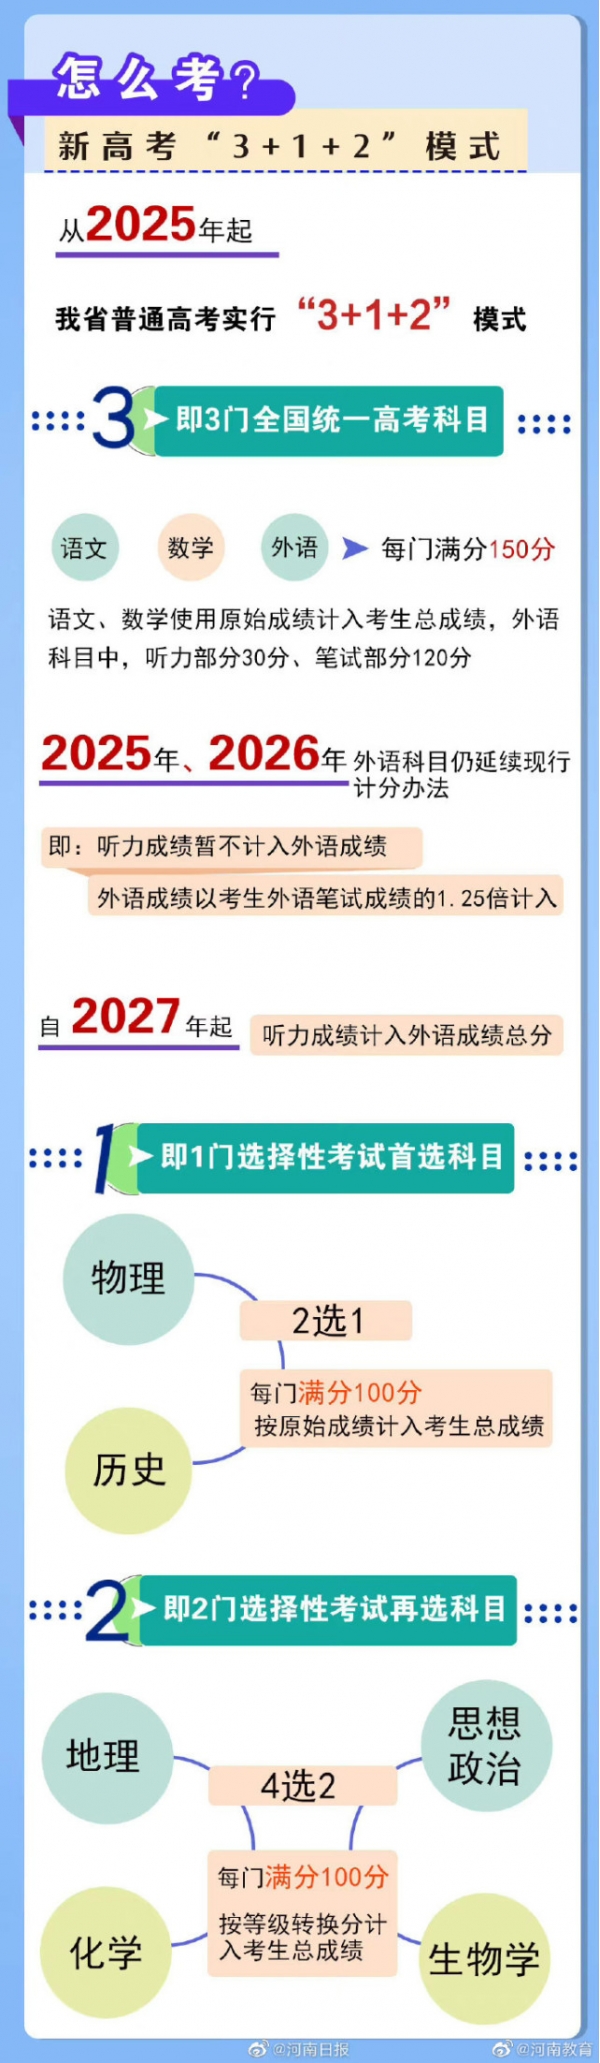 3+1+2模式！河南、陕西、四川等多地公布高考改革方案